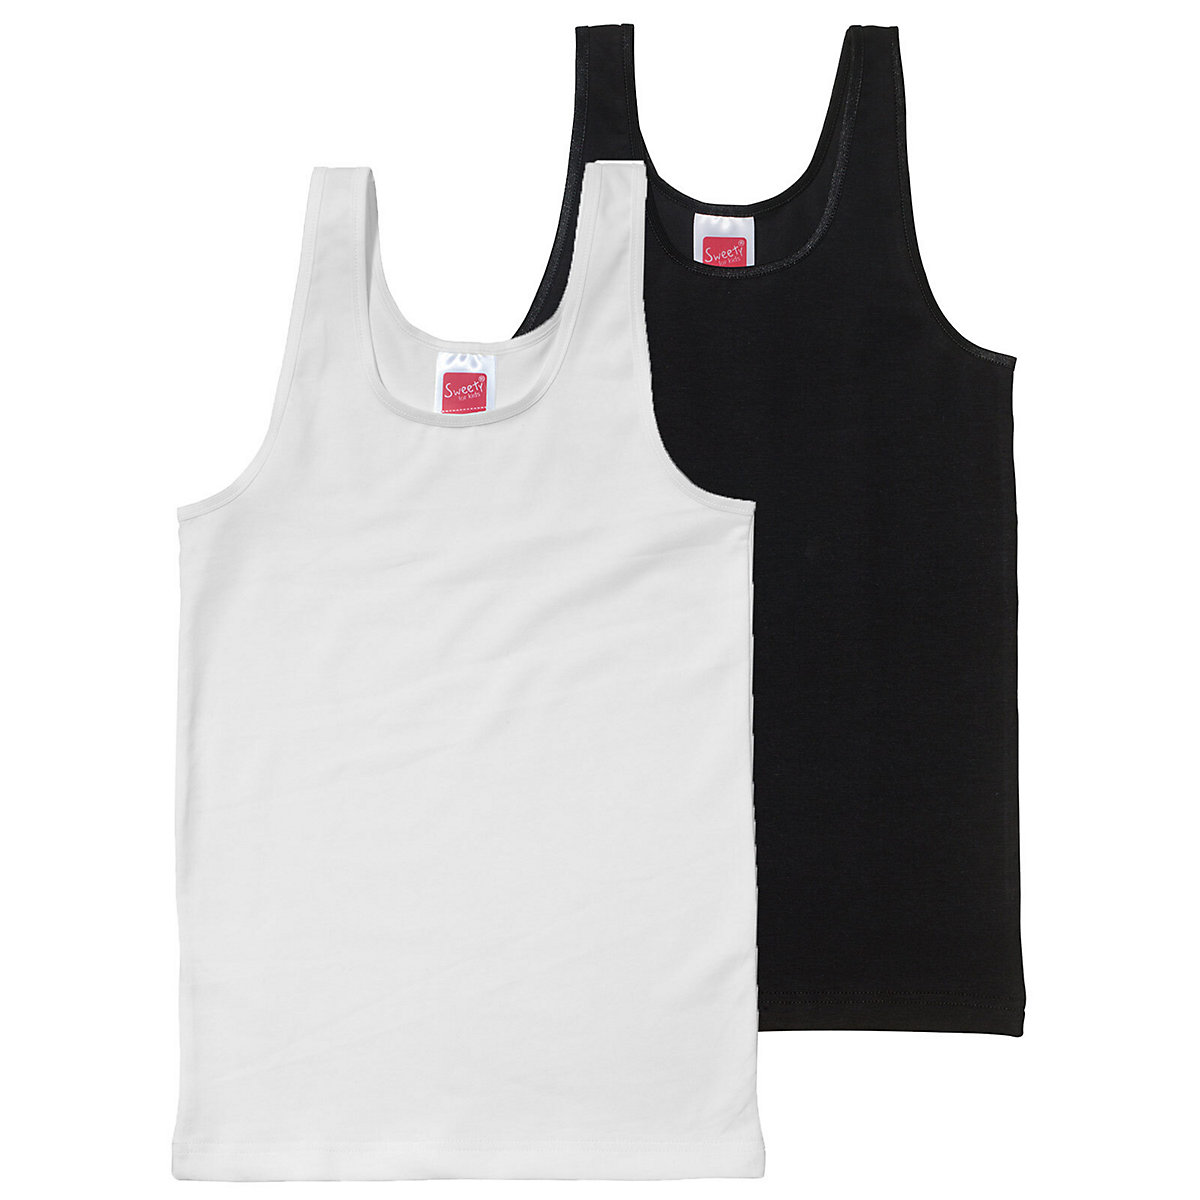 Sweety for Kids 2er Sparpack Mädchen Achselhemd Single Jersey Unterhemden für Mädchen schwarz/weiß